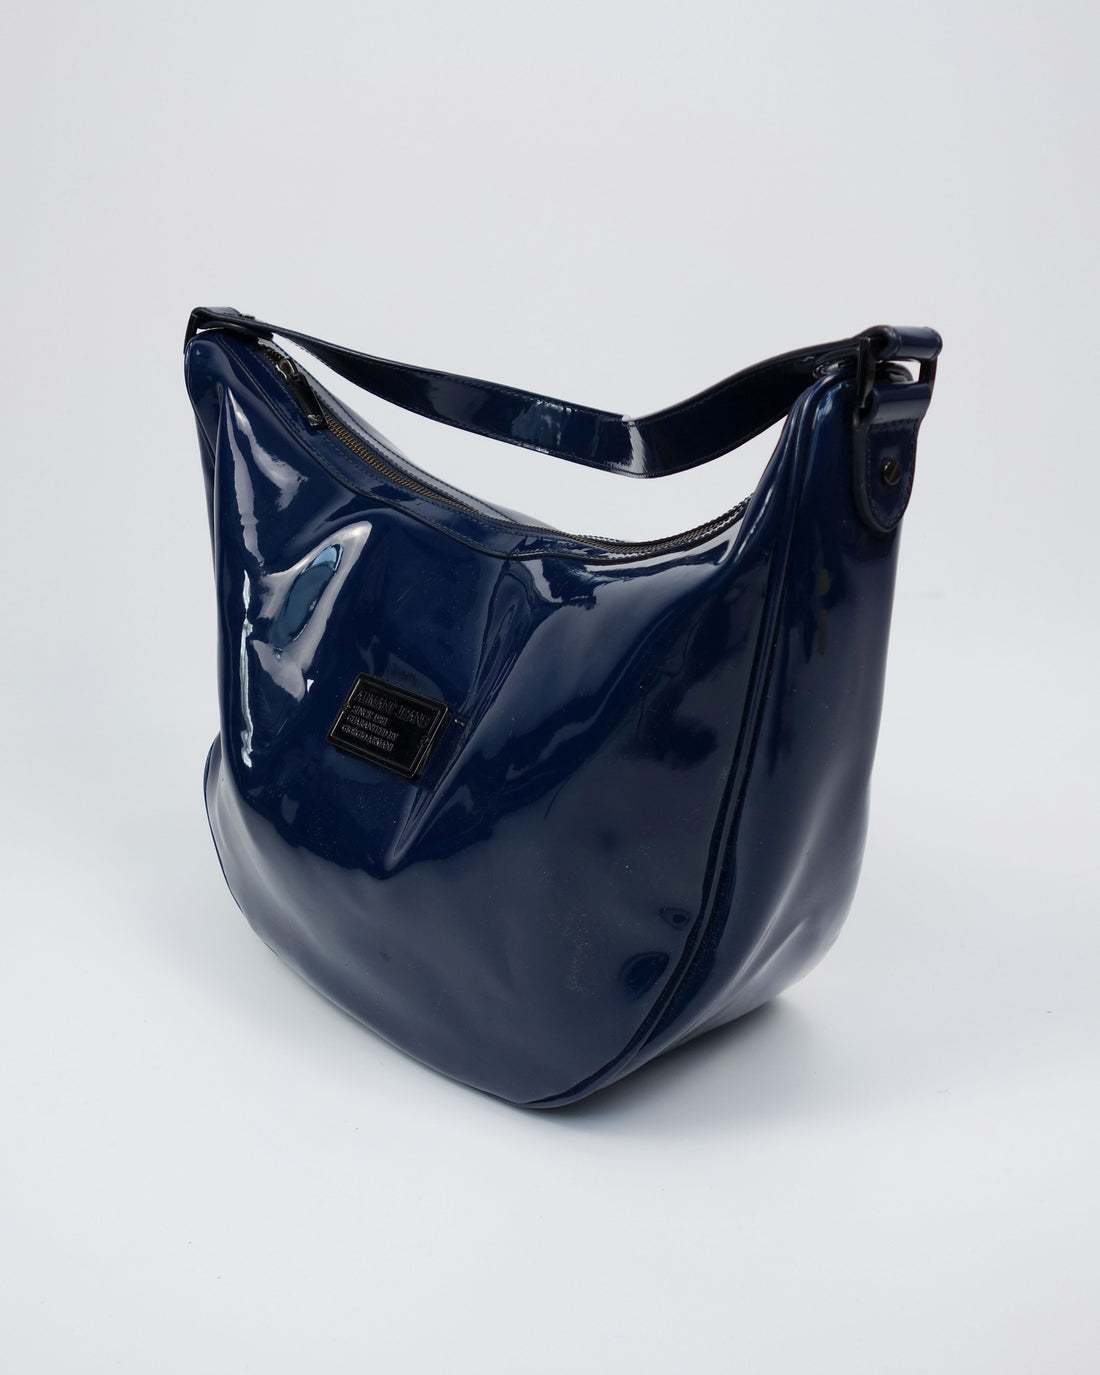 Armani Navy Blue Shiny Shoulder Bag 2000's